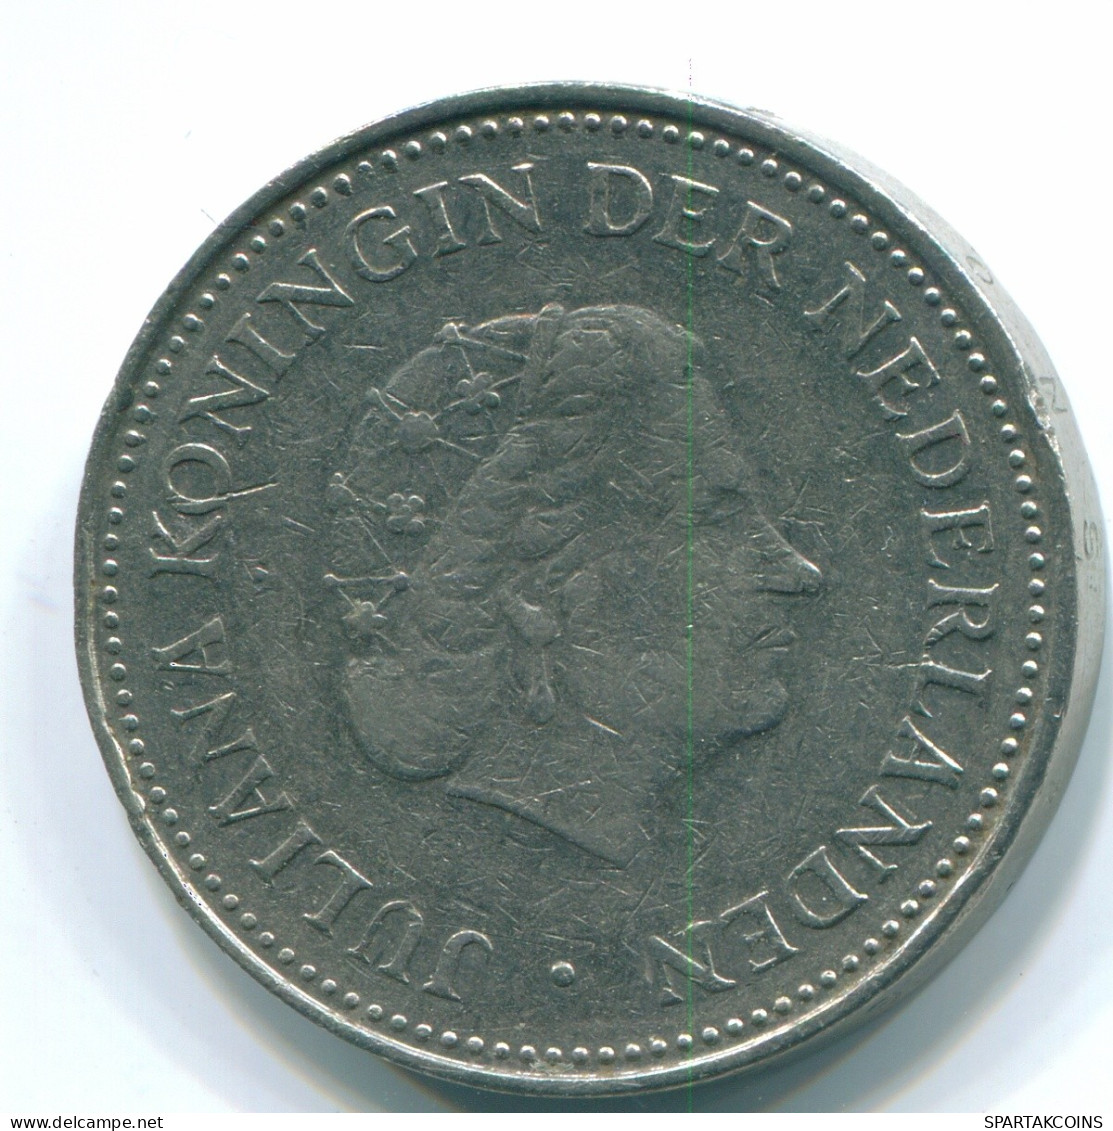 1 GULDEN 1971 NETHERLANDS ANTILLES Nickel Colonial Coin #S11976.U.A - Niederländische Antillen